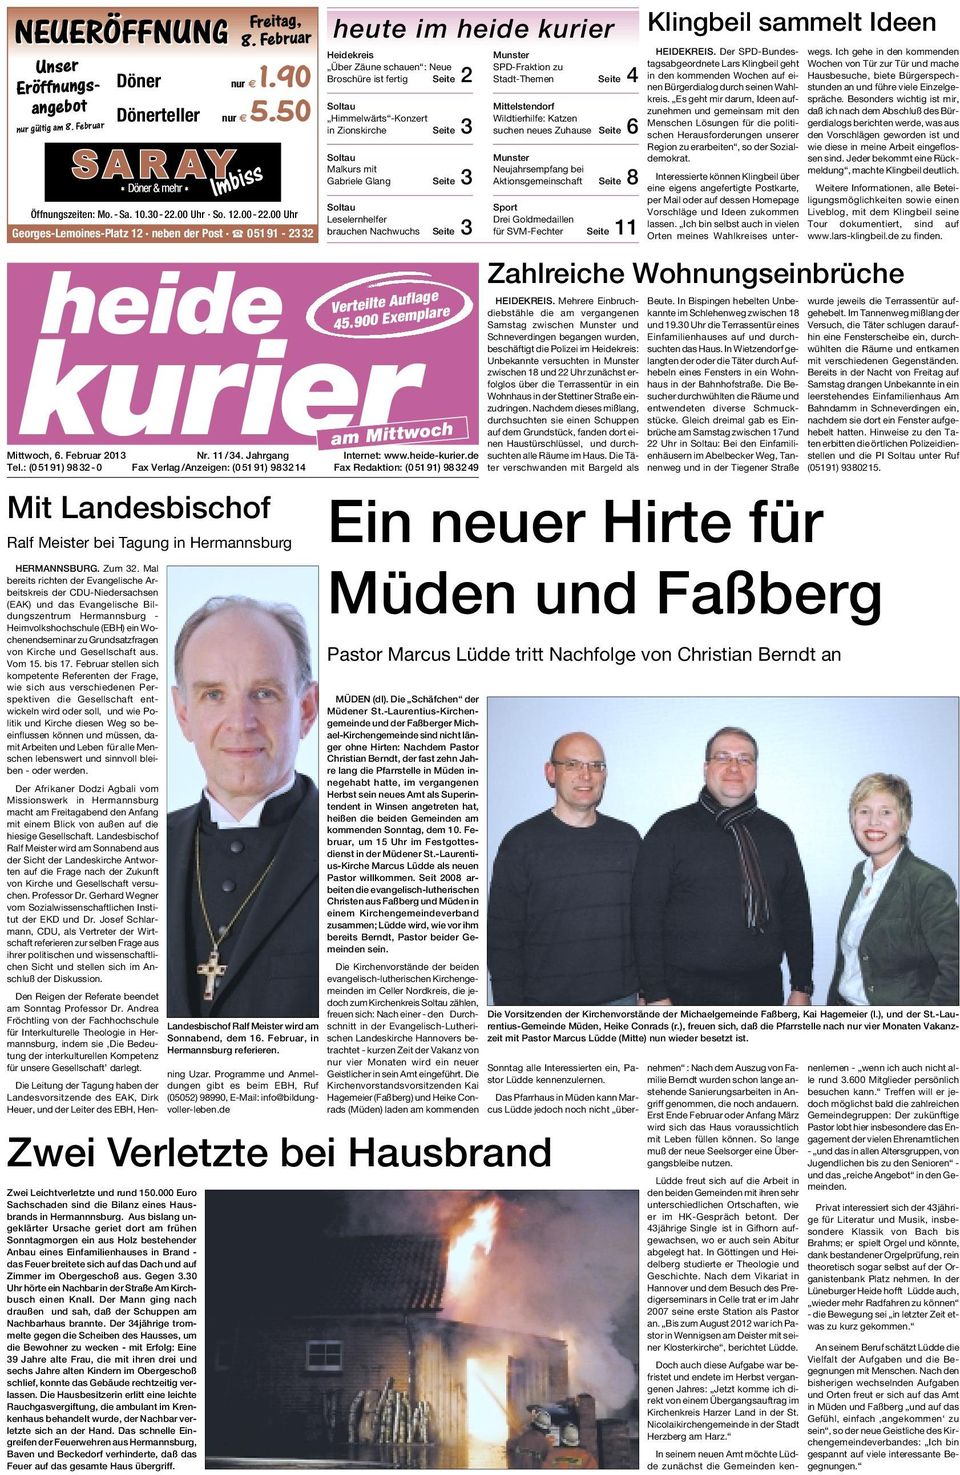 Malkurs mit Gabriele Glang Seite 3 Leselernhelfer brauchen Nachwuchs Seite 3 Verteilte Auflage 45.900 Exemplare kurier Nr. 11 /34. Jahrgang Internet: www.heide-kurier.de Tel.